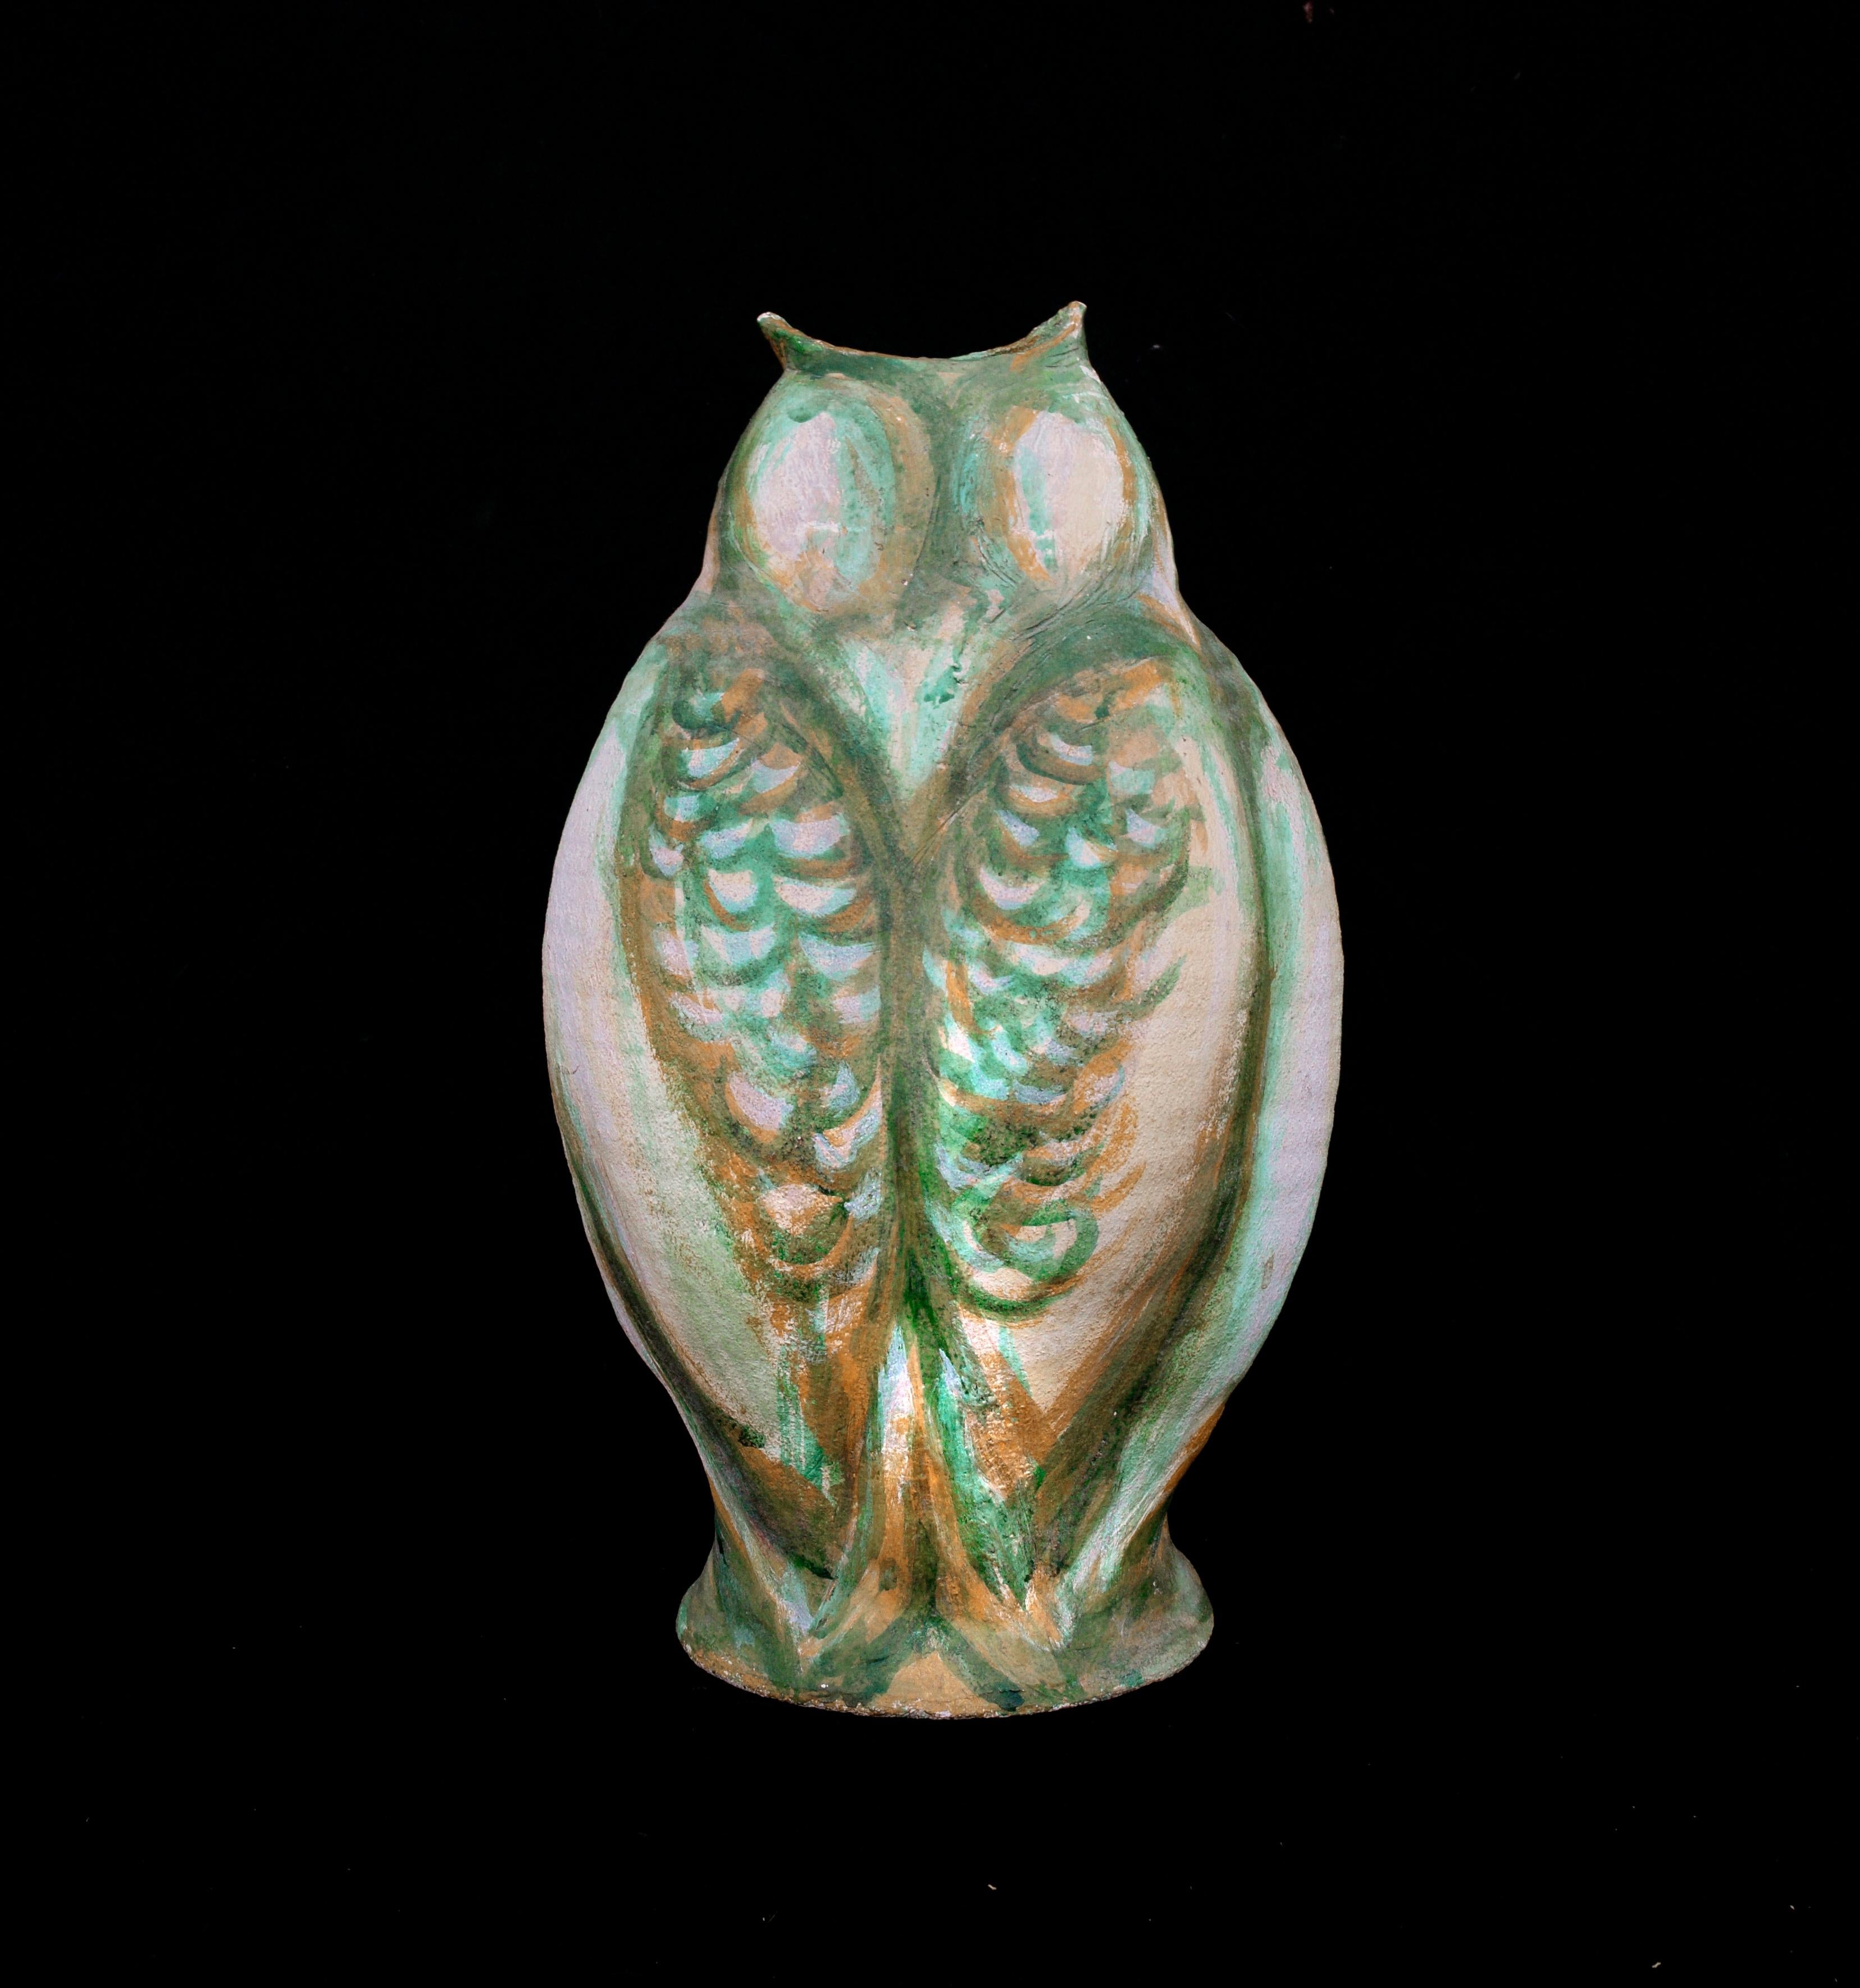 Green Owl Jar by Joseph Funk - Sculpture by Joe Funk